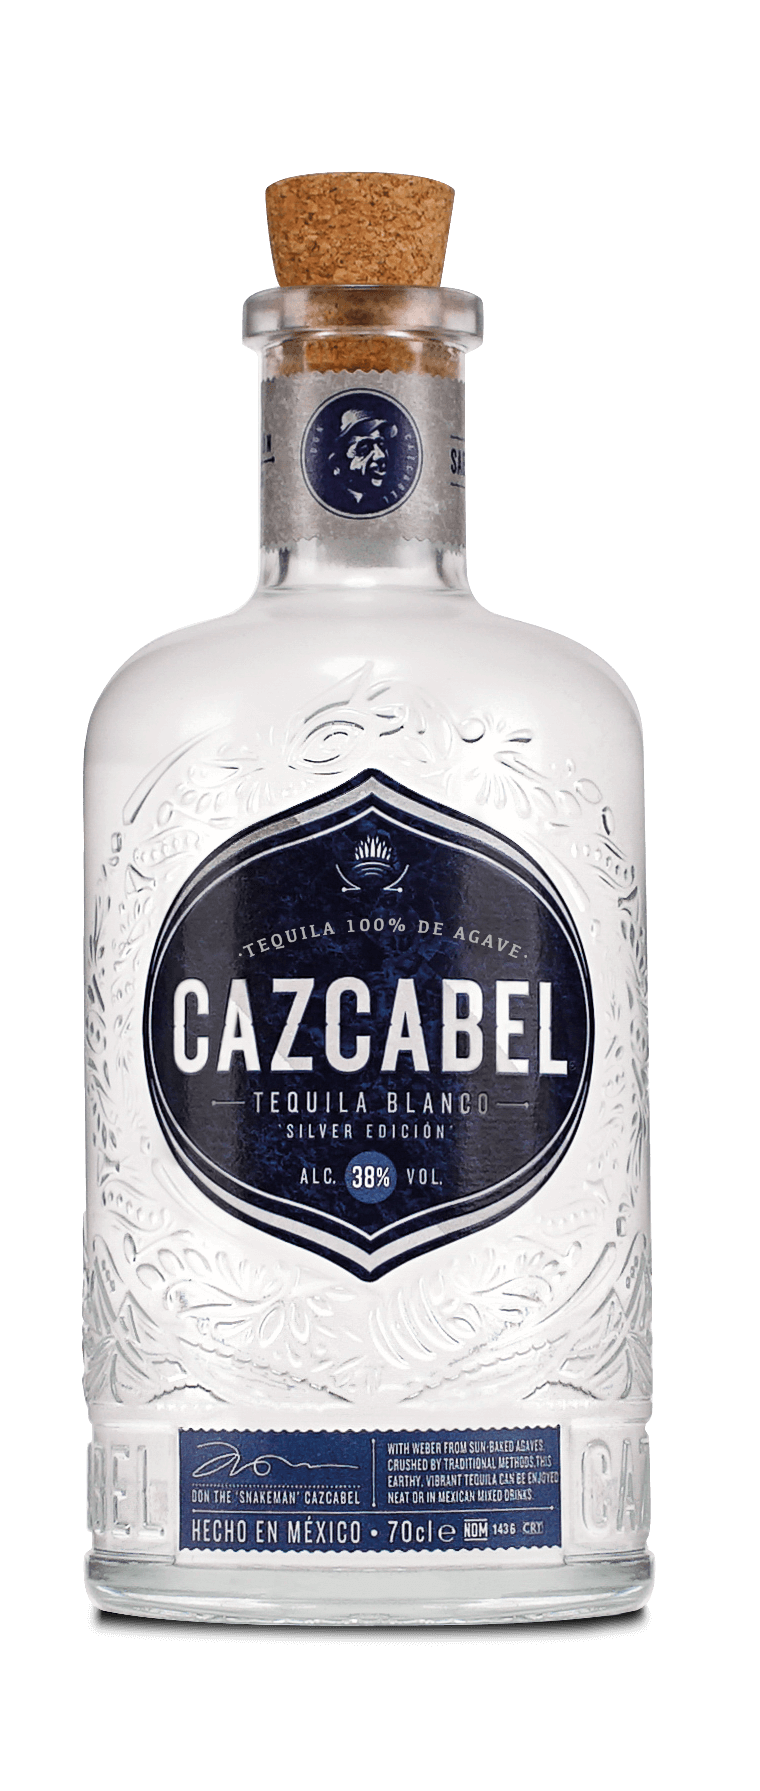 Cazcabel Blanco Tequila 0,7L 38% Vol.